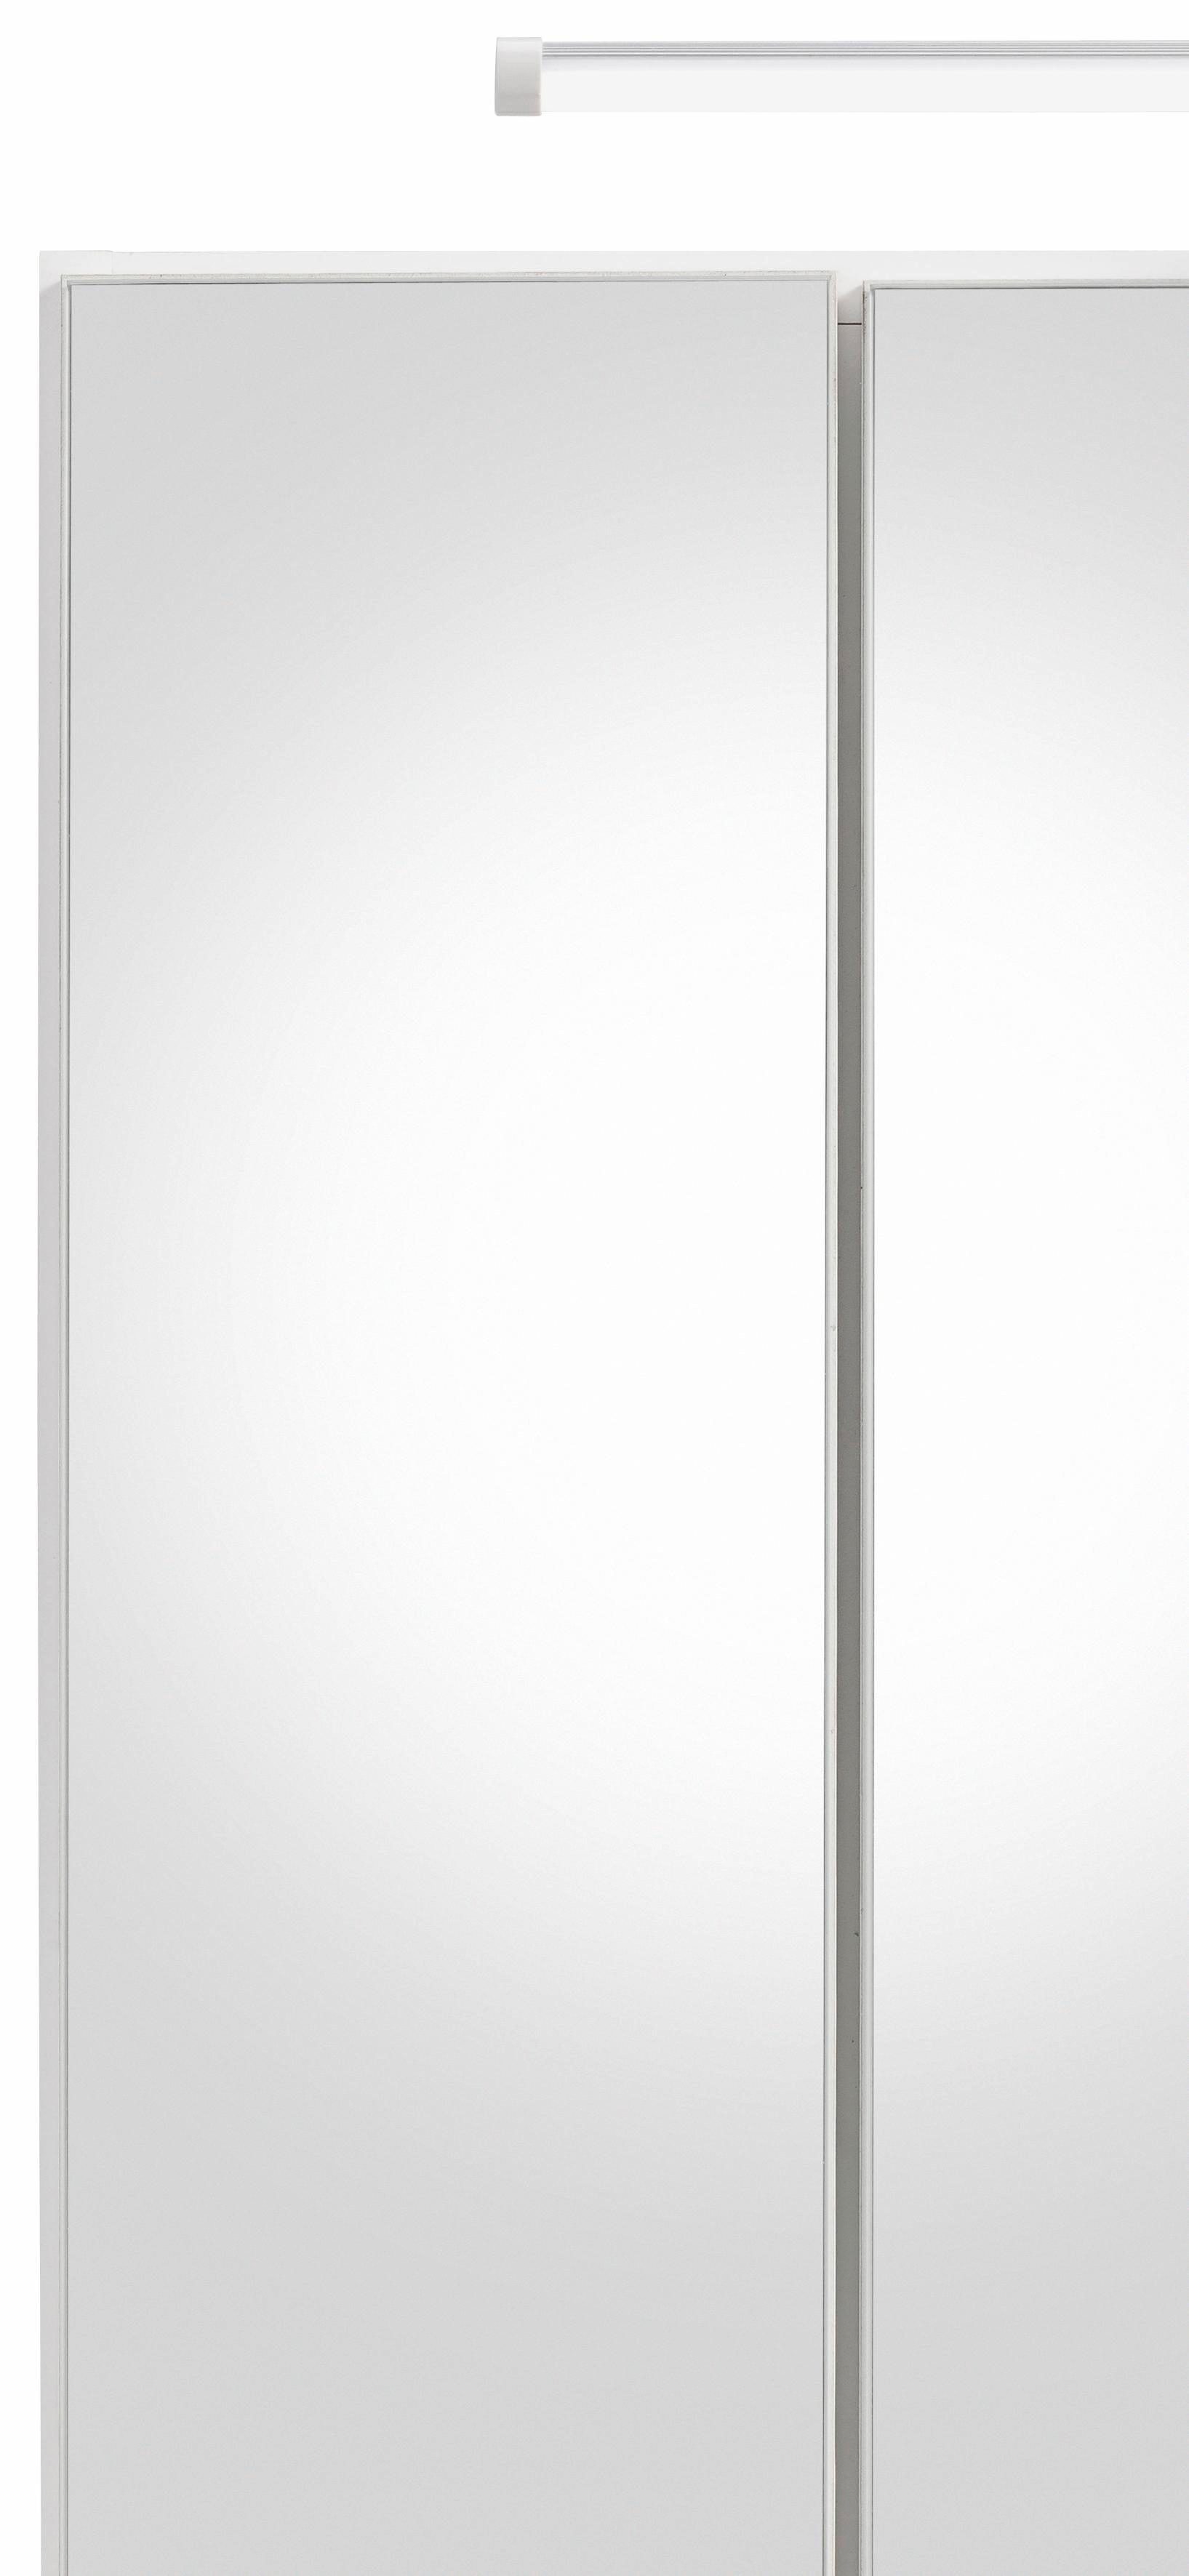 HELD MÖBEL Spiegelschrank Portofino mit weiß weiß | LED-Beleuchtung